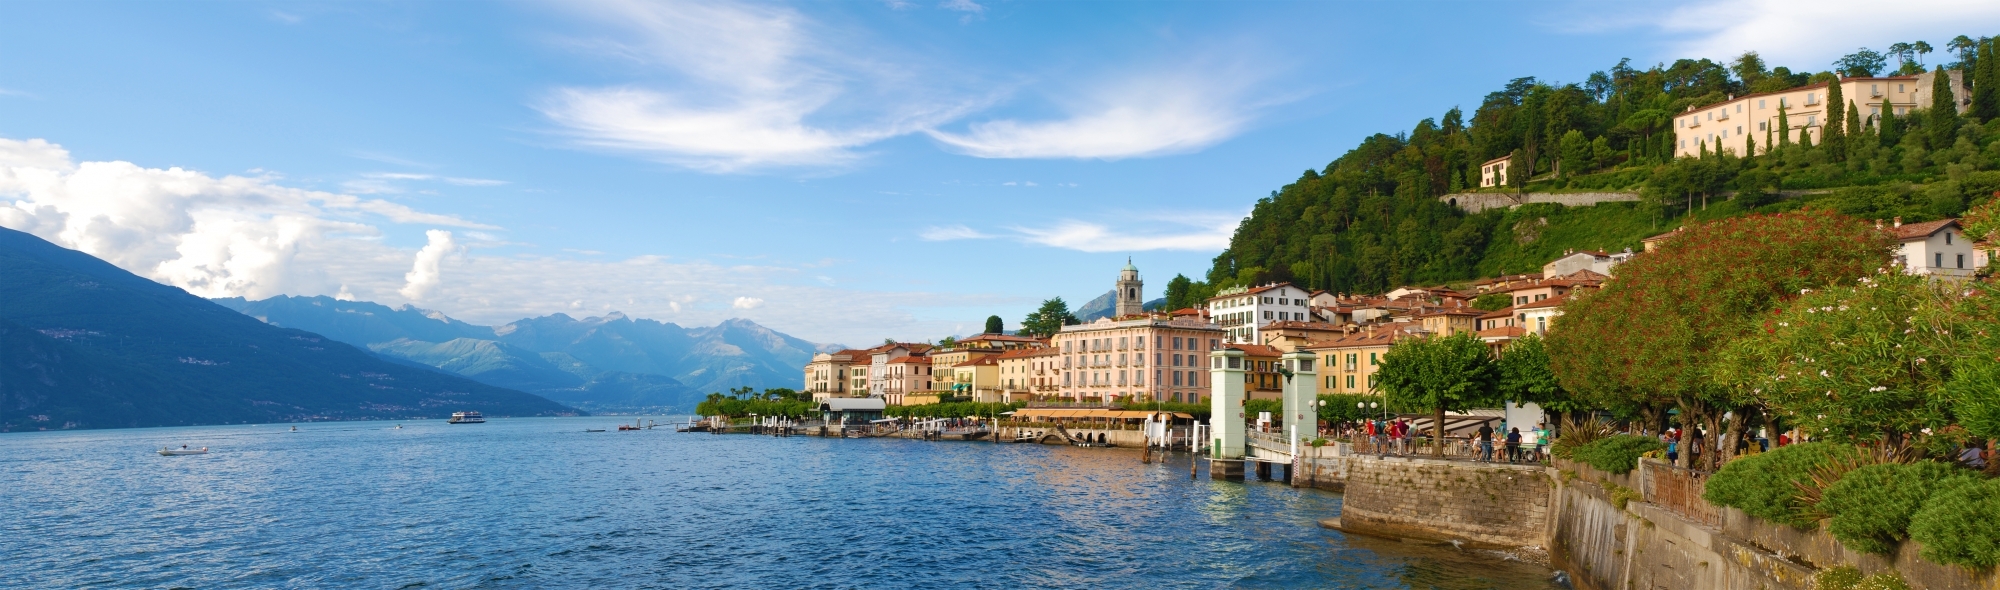 Noleggio BMW a Lago di Como